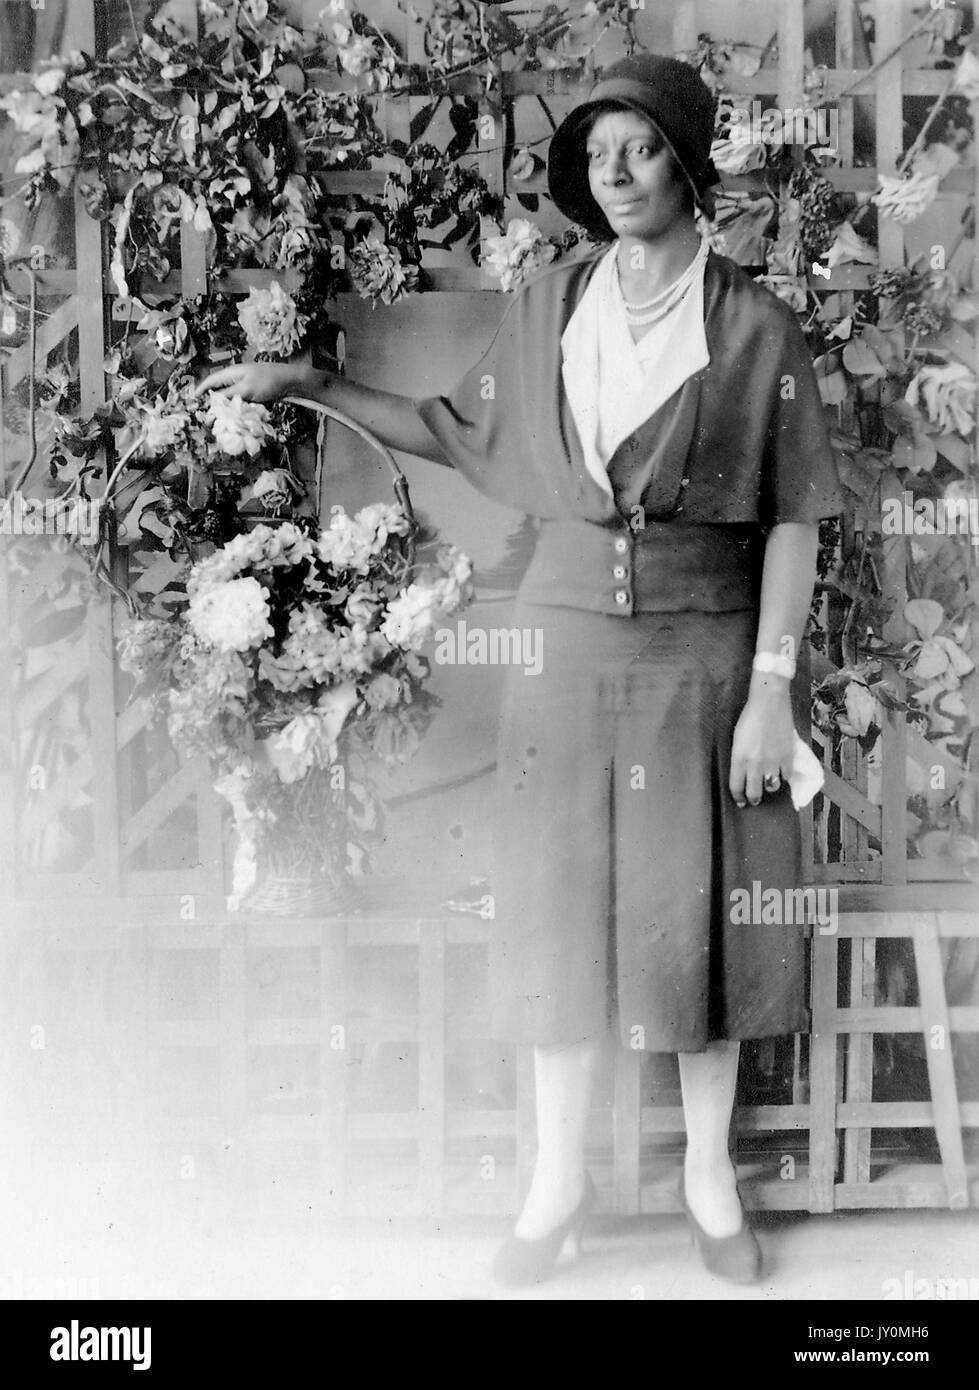 Ganzkörperportrait einer afroamerikanischen Frau, die vor einem mit weißen Blumen geschmückten Zaun steht, während sie einen Blumenkorb in der rechten Hand hält, ein dunkles Kleid trägt, ein Taschentuch in der anderen Hand hält, mit einem ernsten Gesichtsausdruck, 1920. Stockfoto